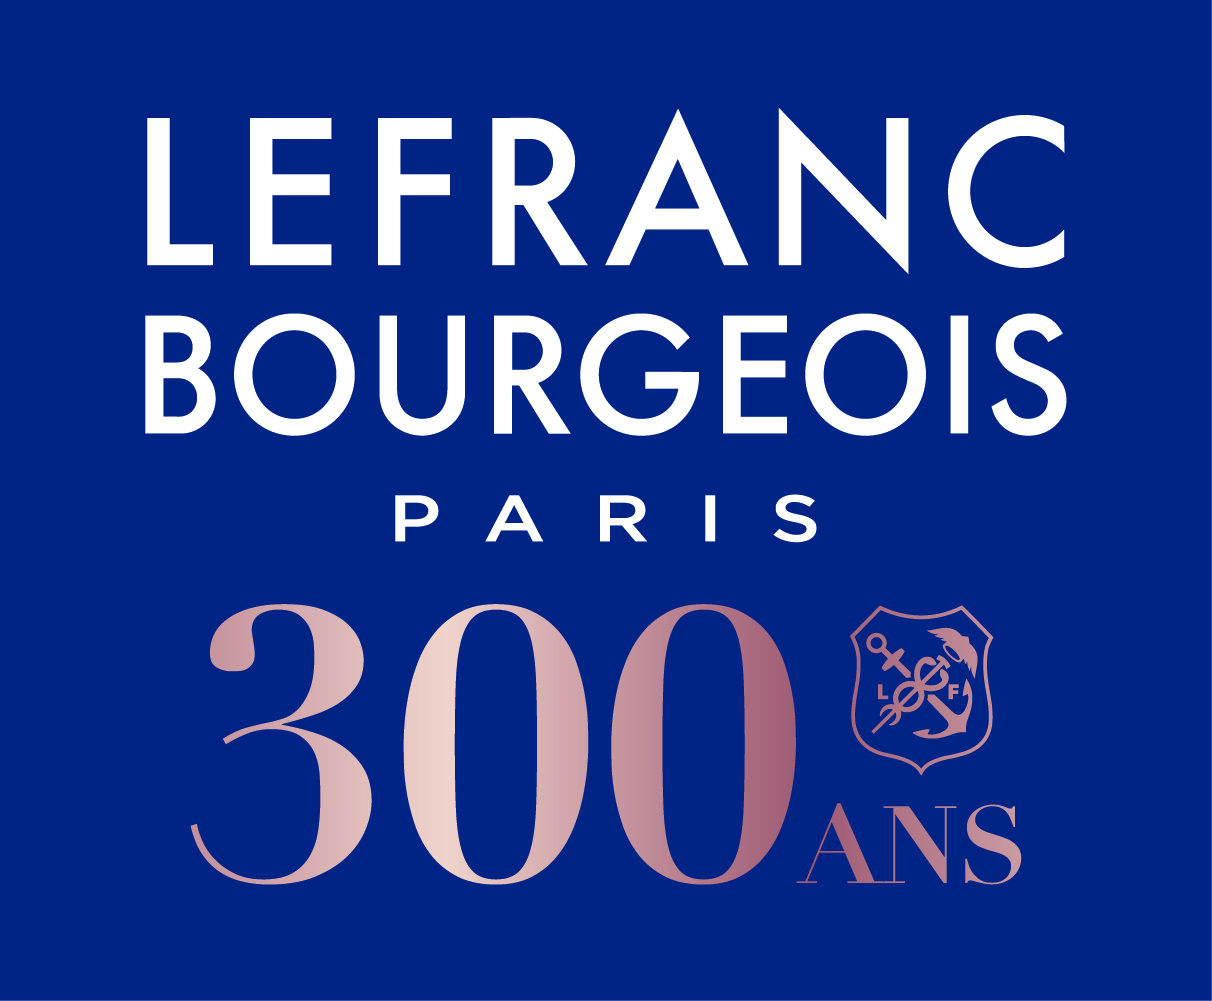 lefranc_bourgeois_300ans